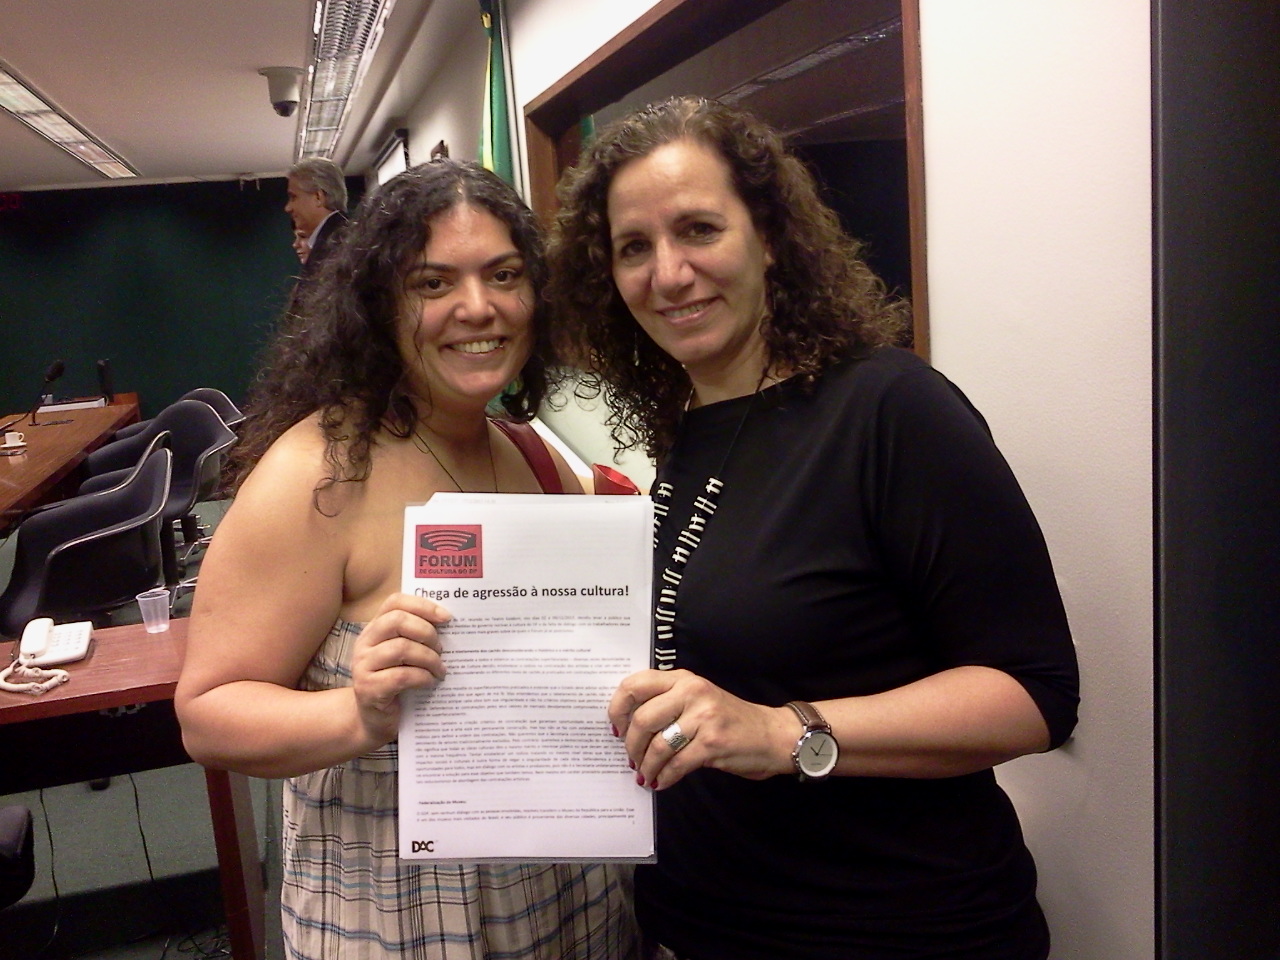 Sheila Campos do Fórum de Cultura do DF entrega carta a presidente da Comissão - deputada Jandira Feghali - PCdoB/RJ